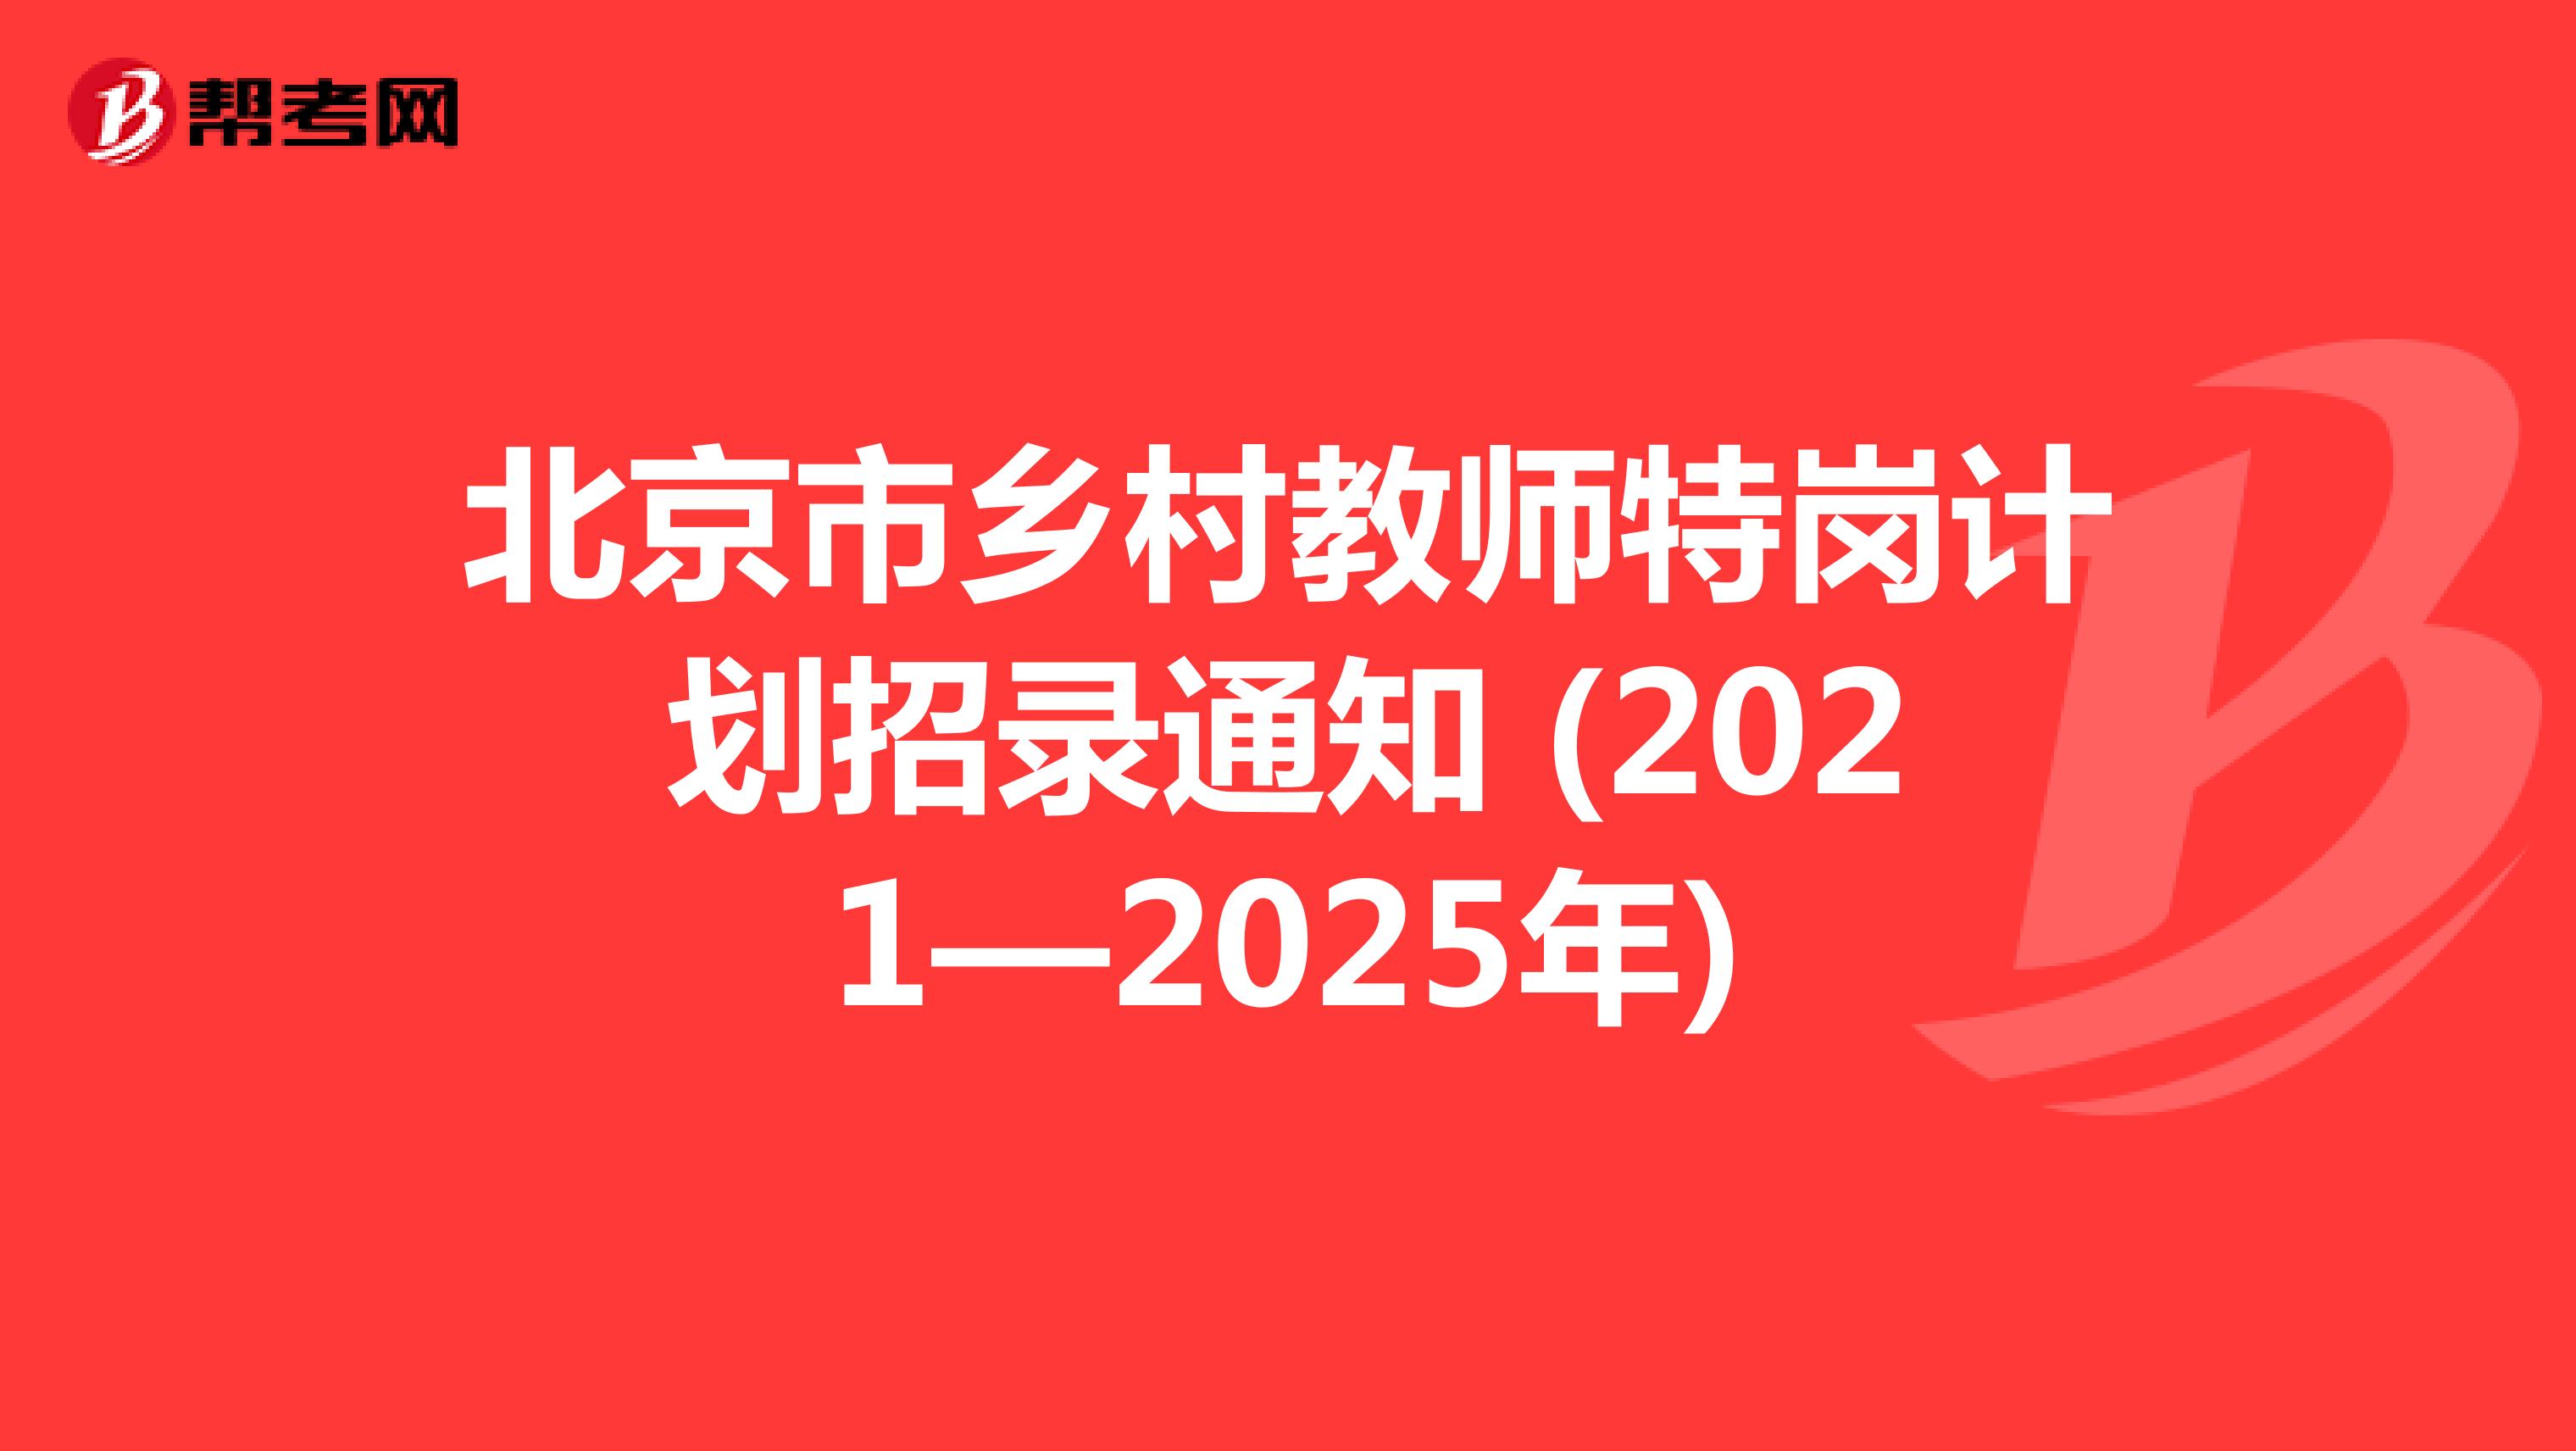 北京市乡村教师特岗计划招录通知 (2021—2025年)